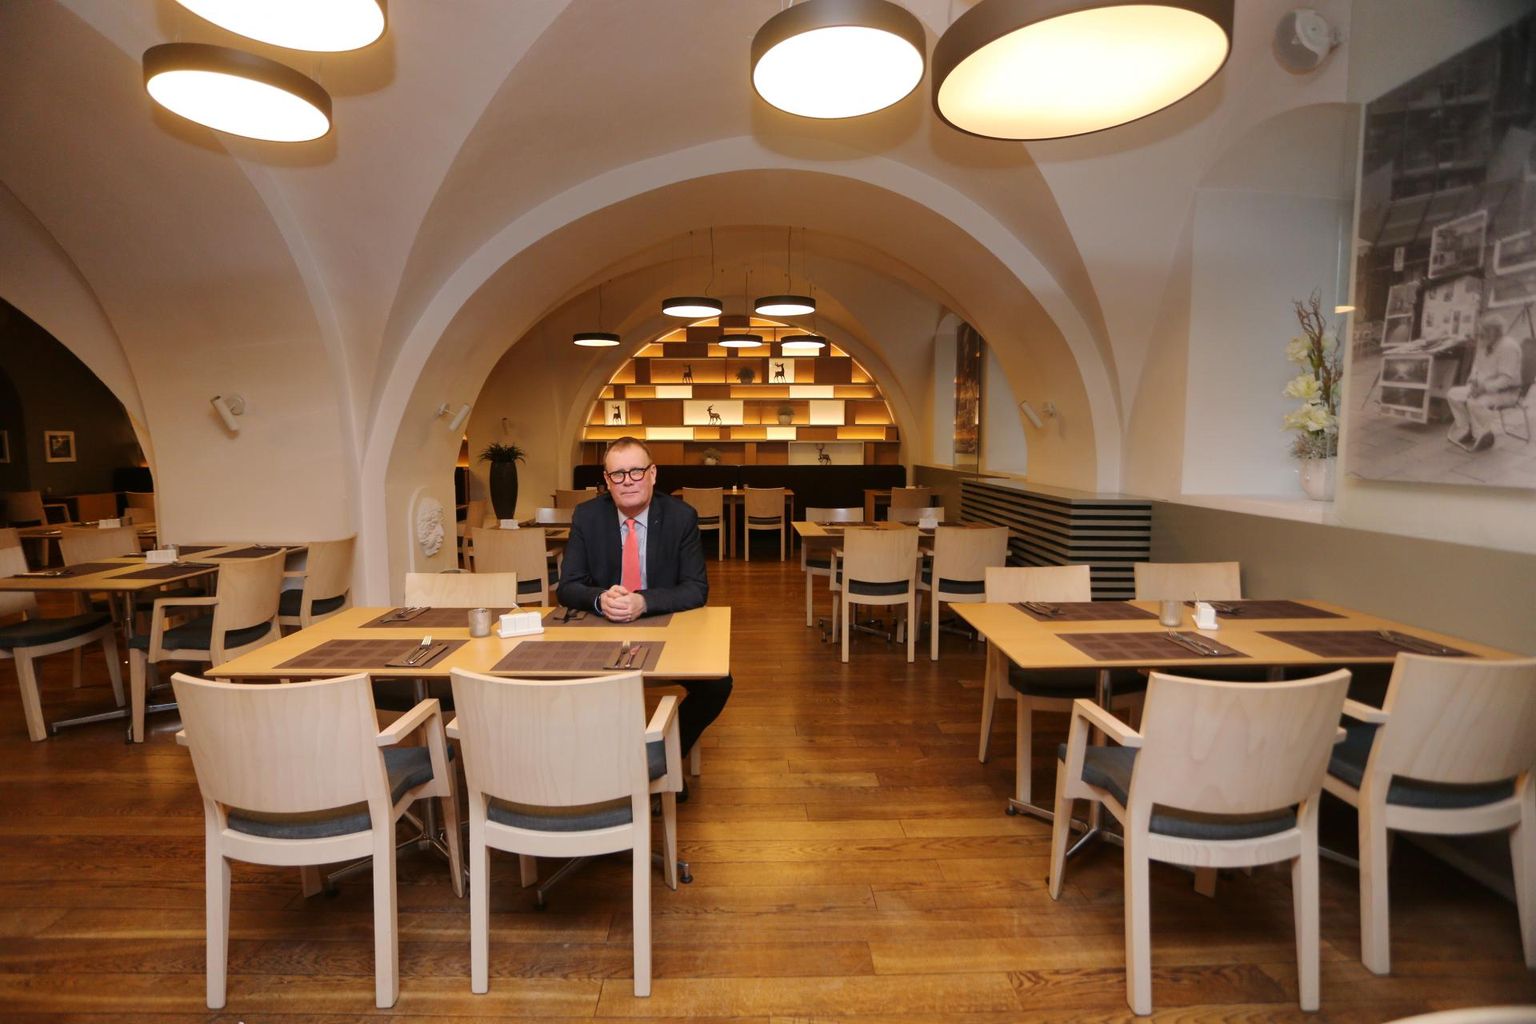 Mitme hotelli juhi Verni Loodmaa sõnul on restoran Polpo aastalõpu õhtusöögile kõik lubatud kohad ära müüdud, ent hotellides tavapärast täituvust pole.